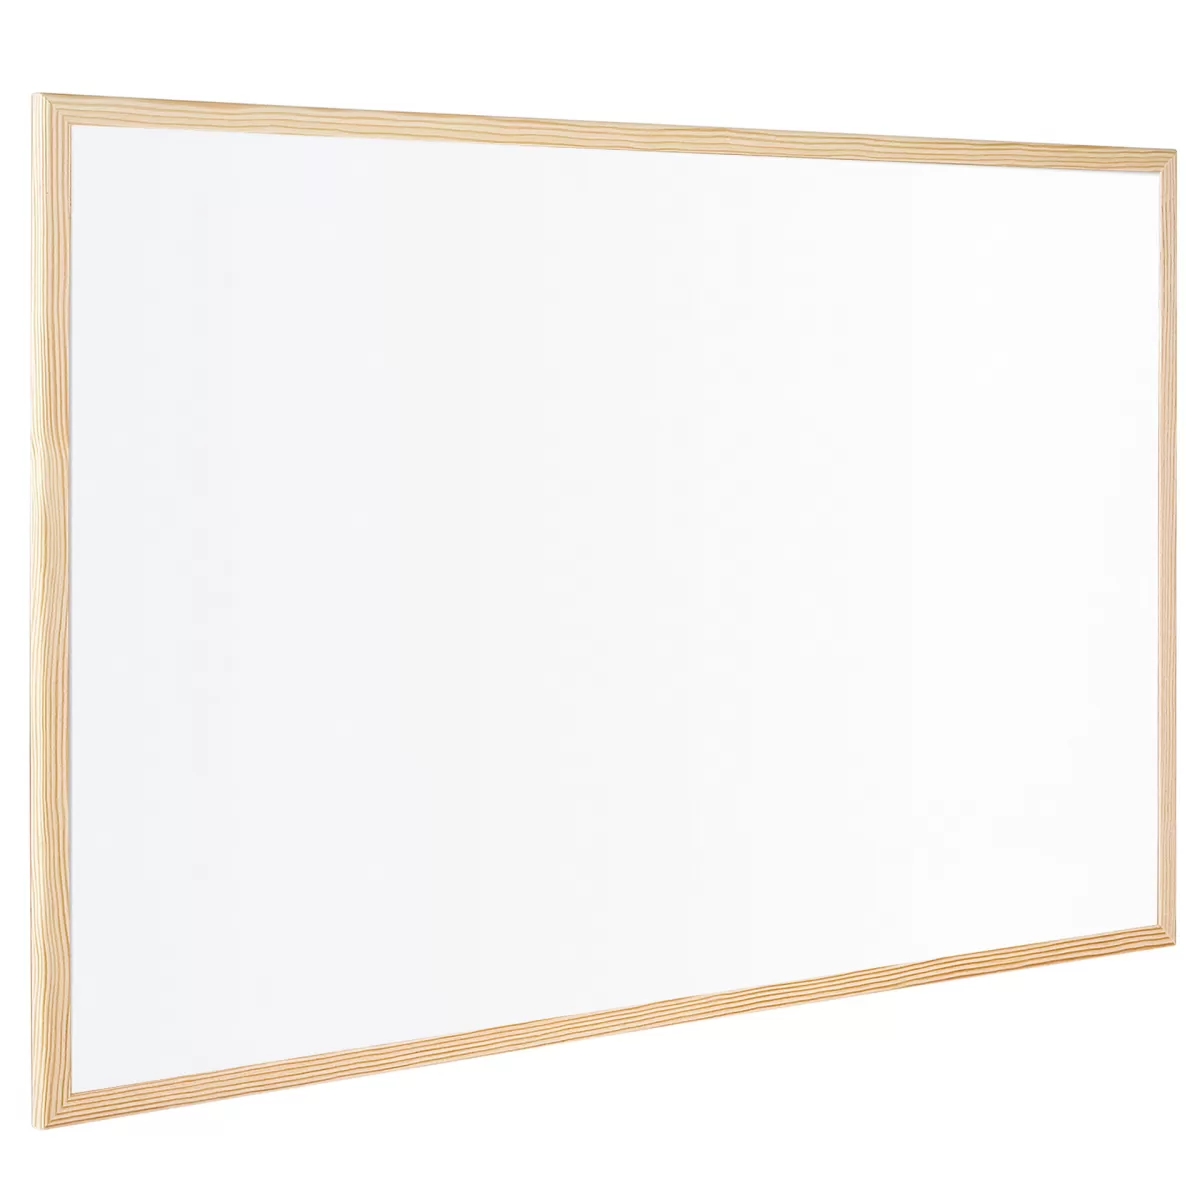 Bi-Office Бяла дъска, с дървена рамка, 40 x 60 cm